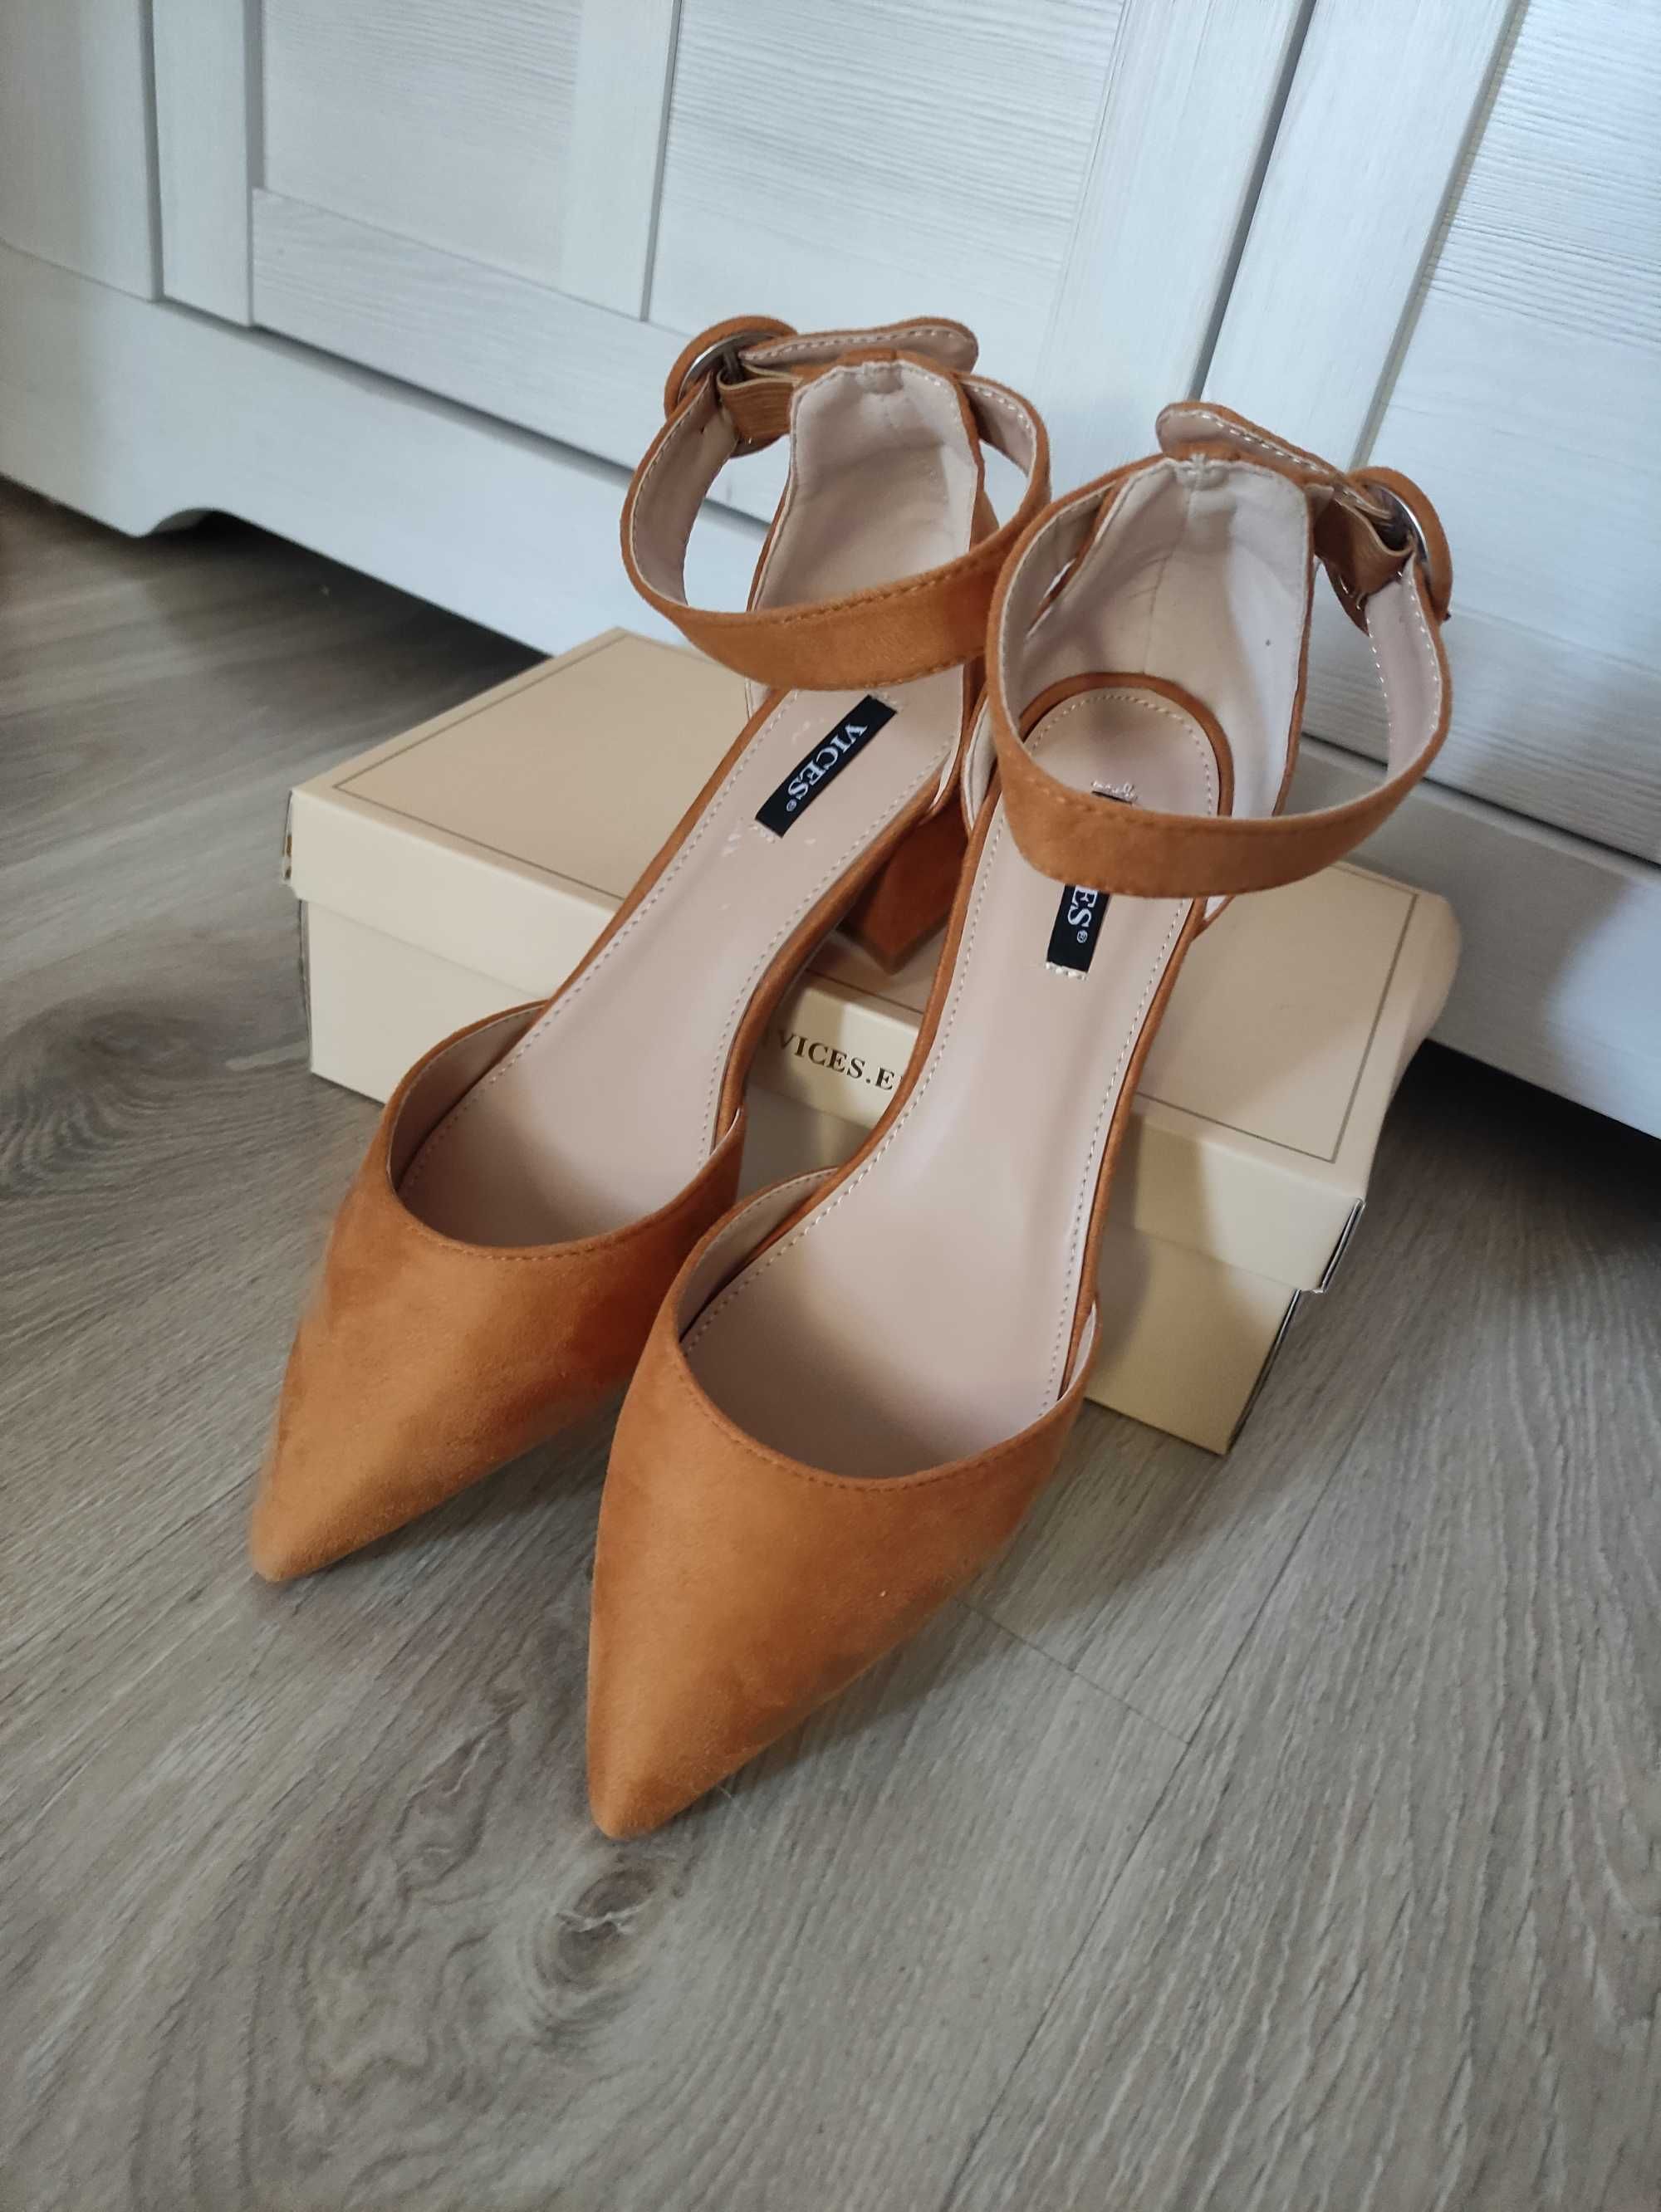 buty VICES sandały zamszowe rude pomarańczowe karmelowe 38 24 24,5cm